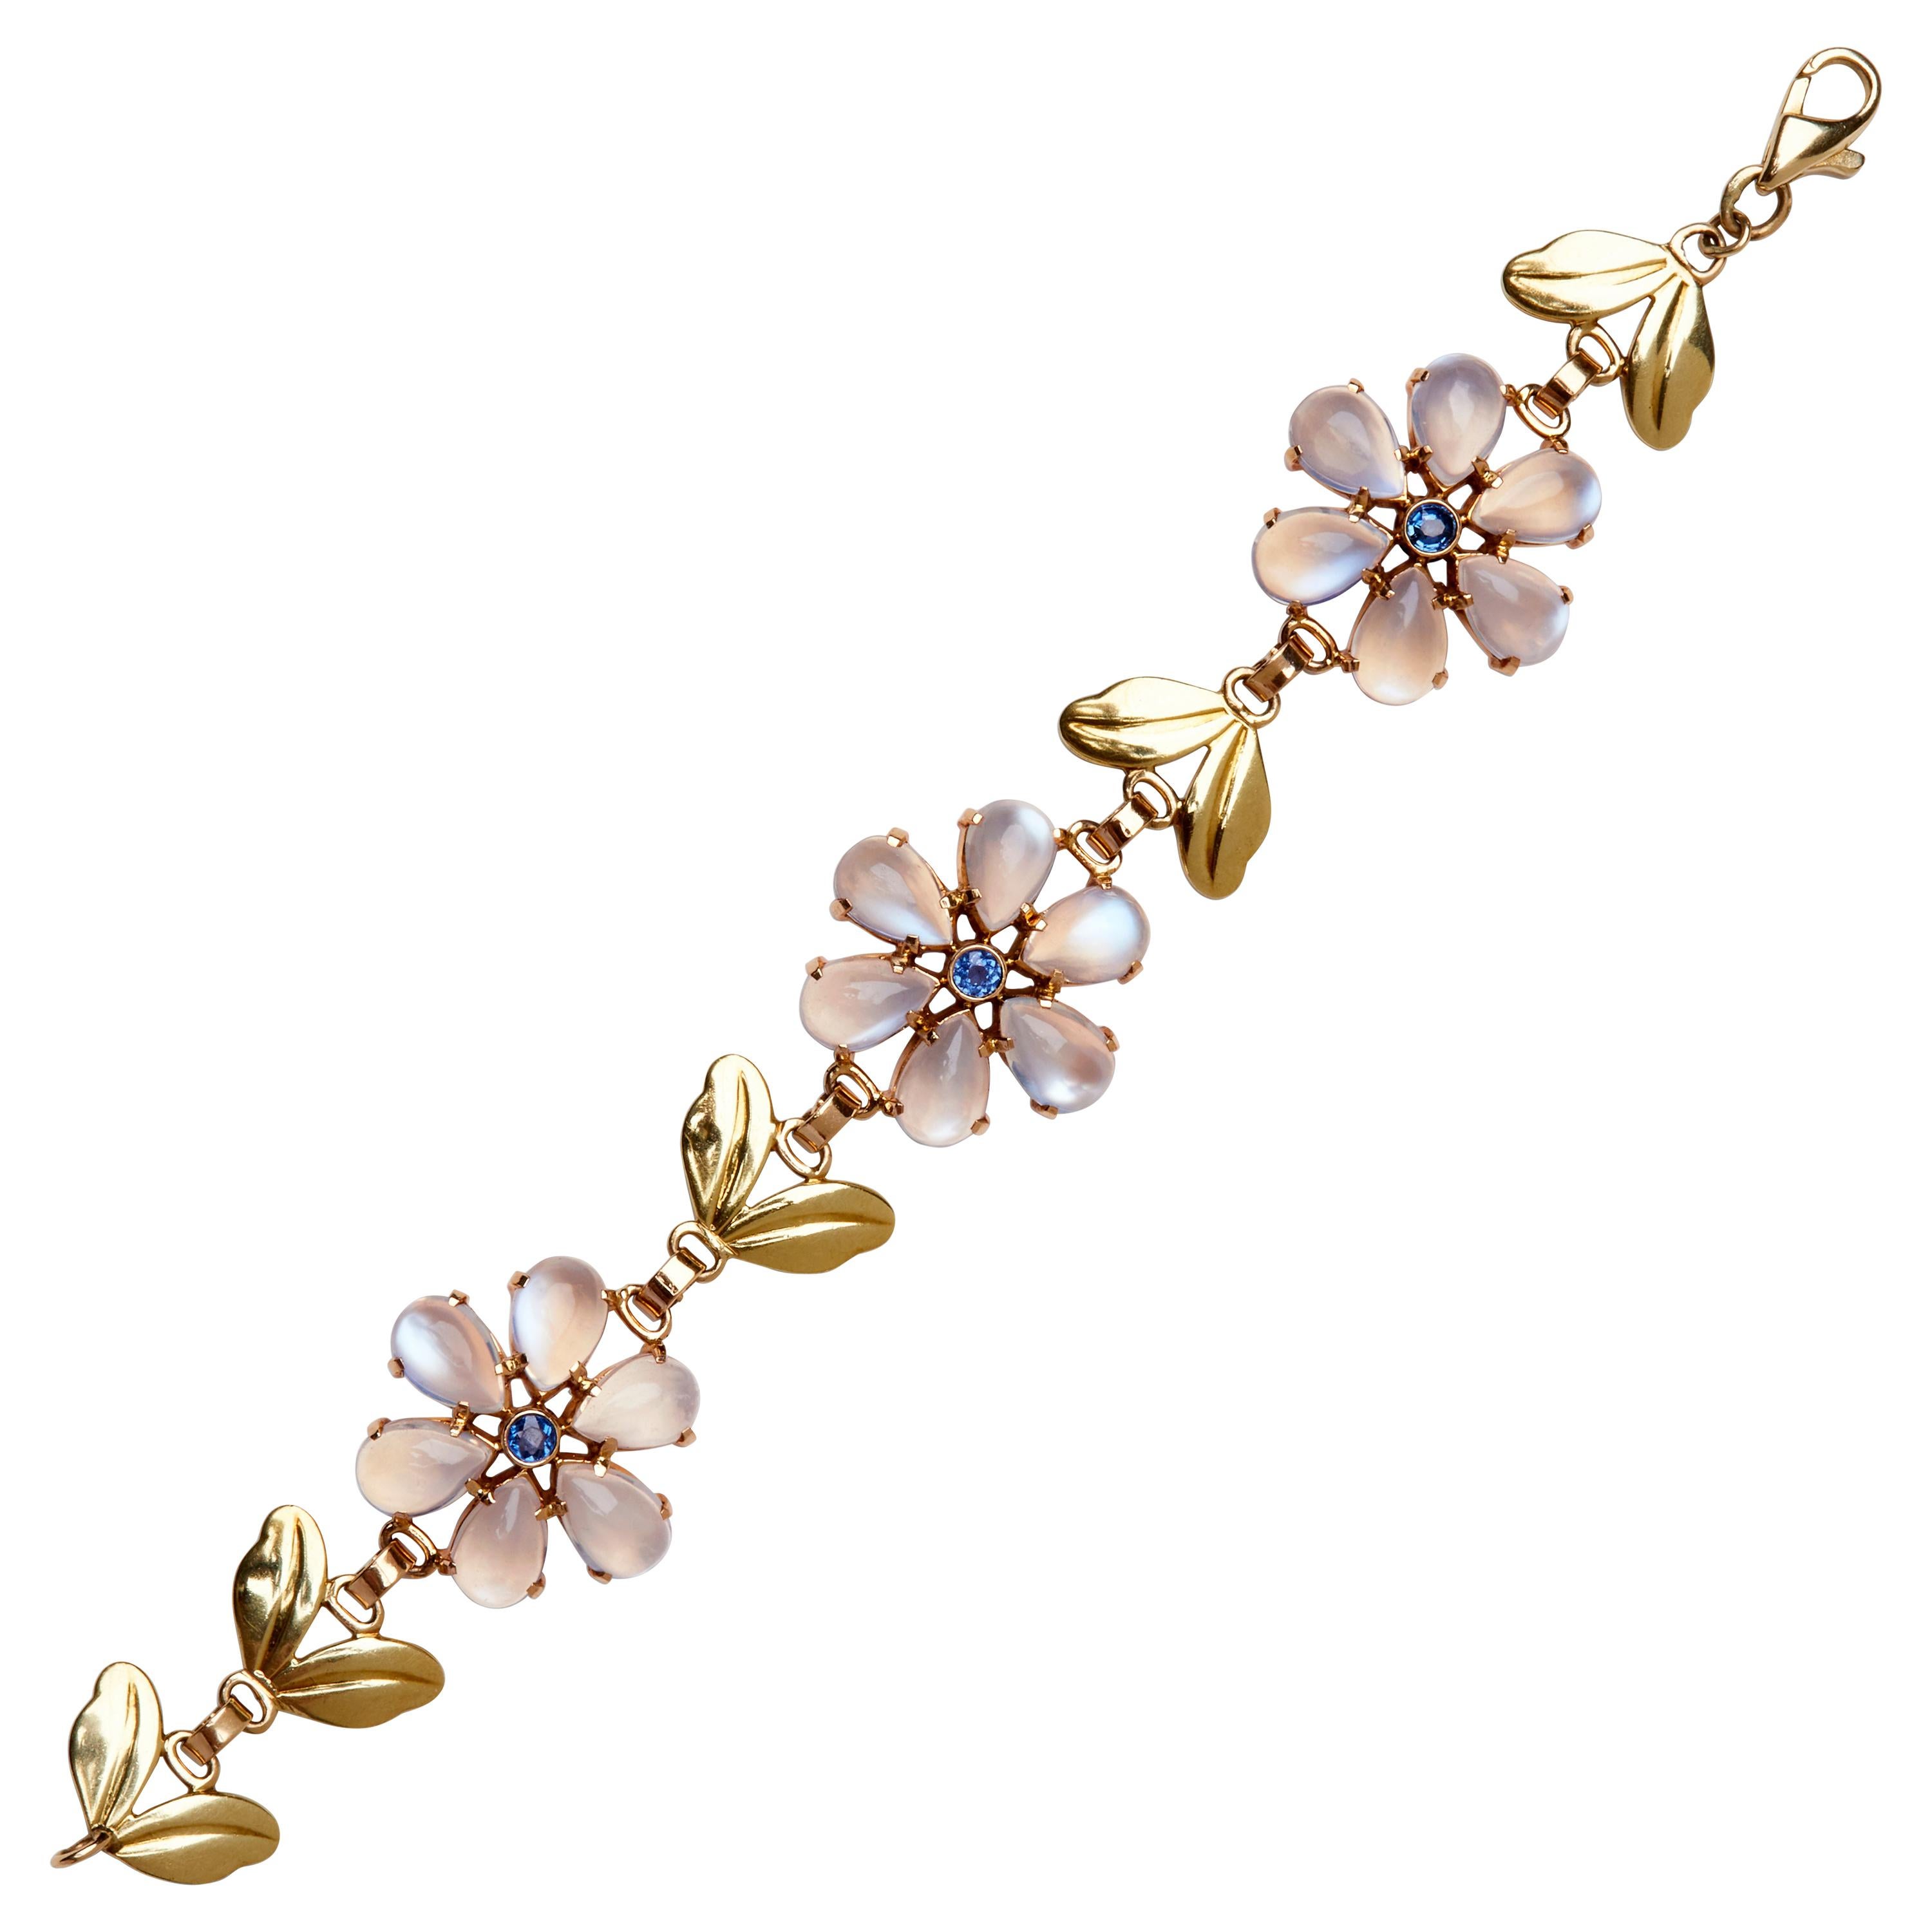 Dieses elegante Armband von Tiffany & Co. aus den 1940er Jahren zeigt drei Stationen mit Blumenmotiven, die durch blattförmige Glieder getrennt sind. Jede Blüte besteht aus leuchtenden Cabochon-Mondsteinblütenblättern, die von blauen Saphiren im